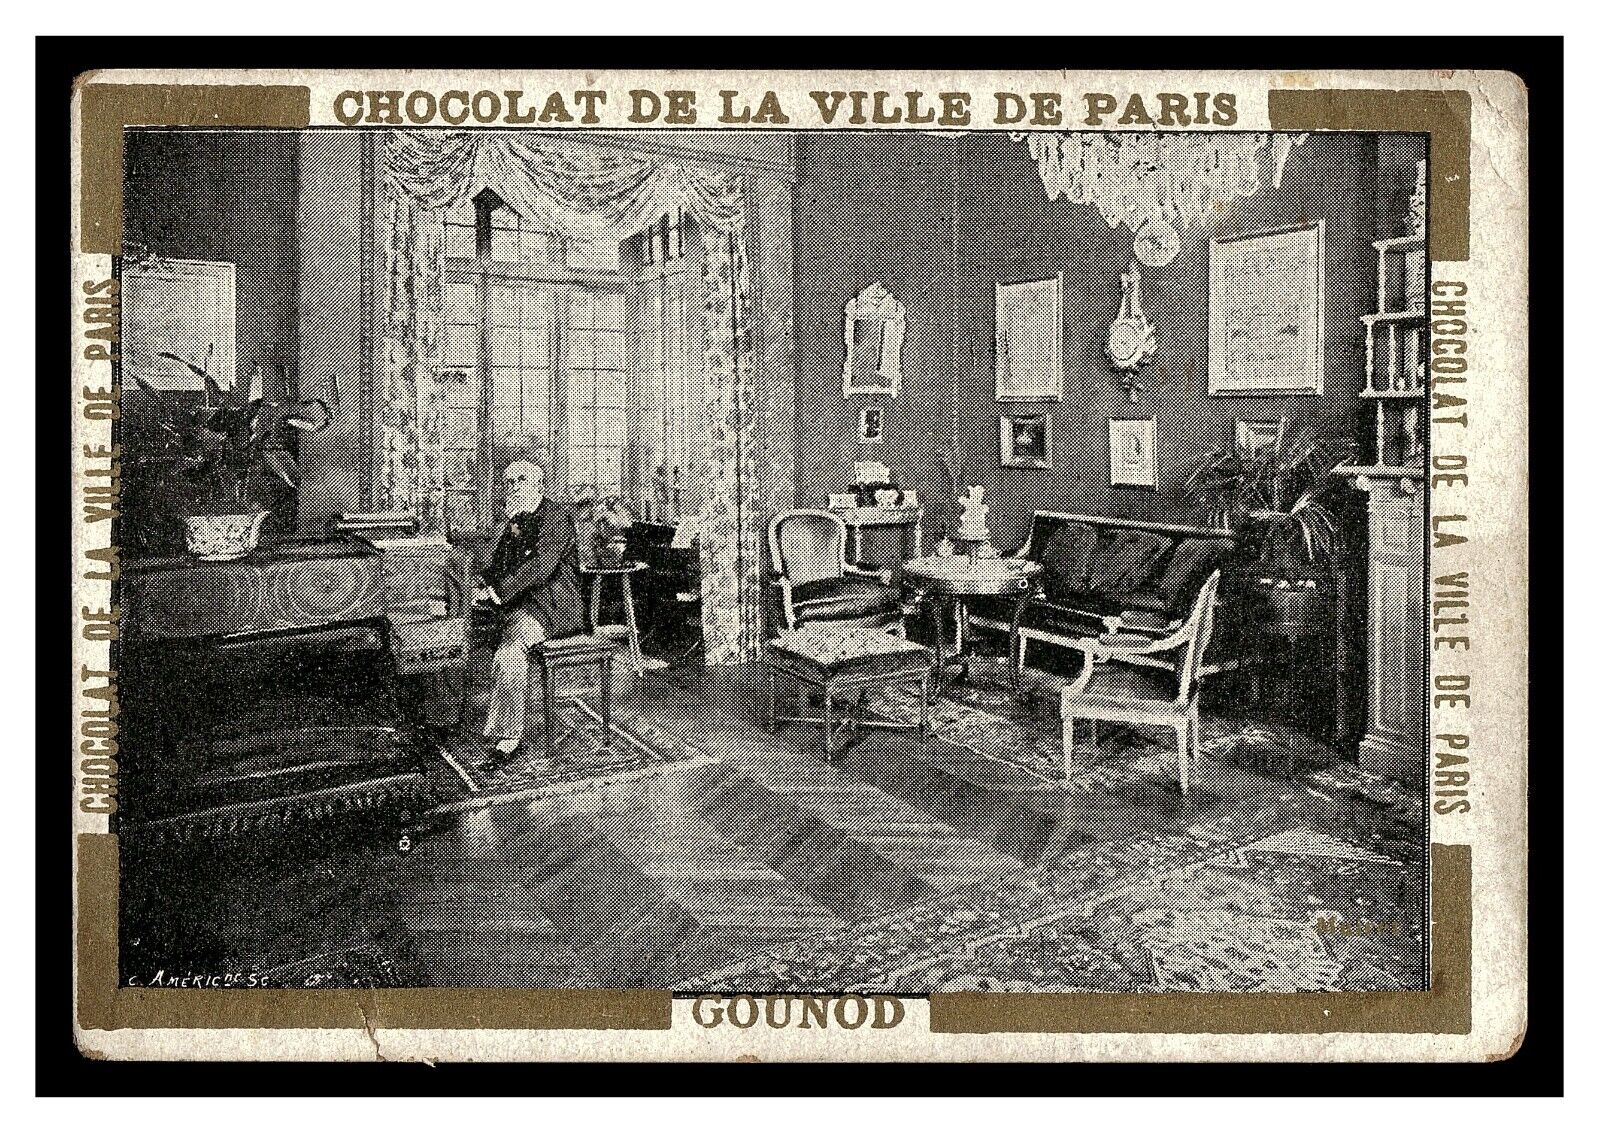 CHARLES GOUNOD CHOCOLAT DE LA VILLE DE PARIS CHOCOLATE CARD FRENCH COMPOSER